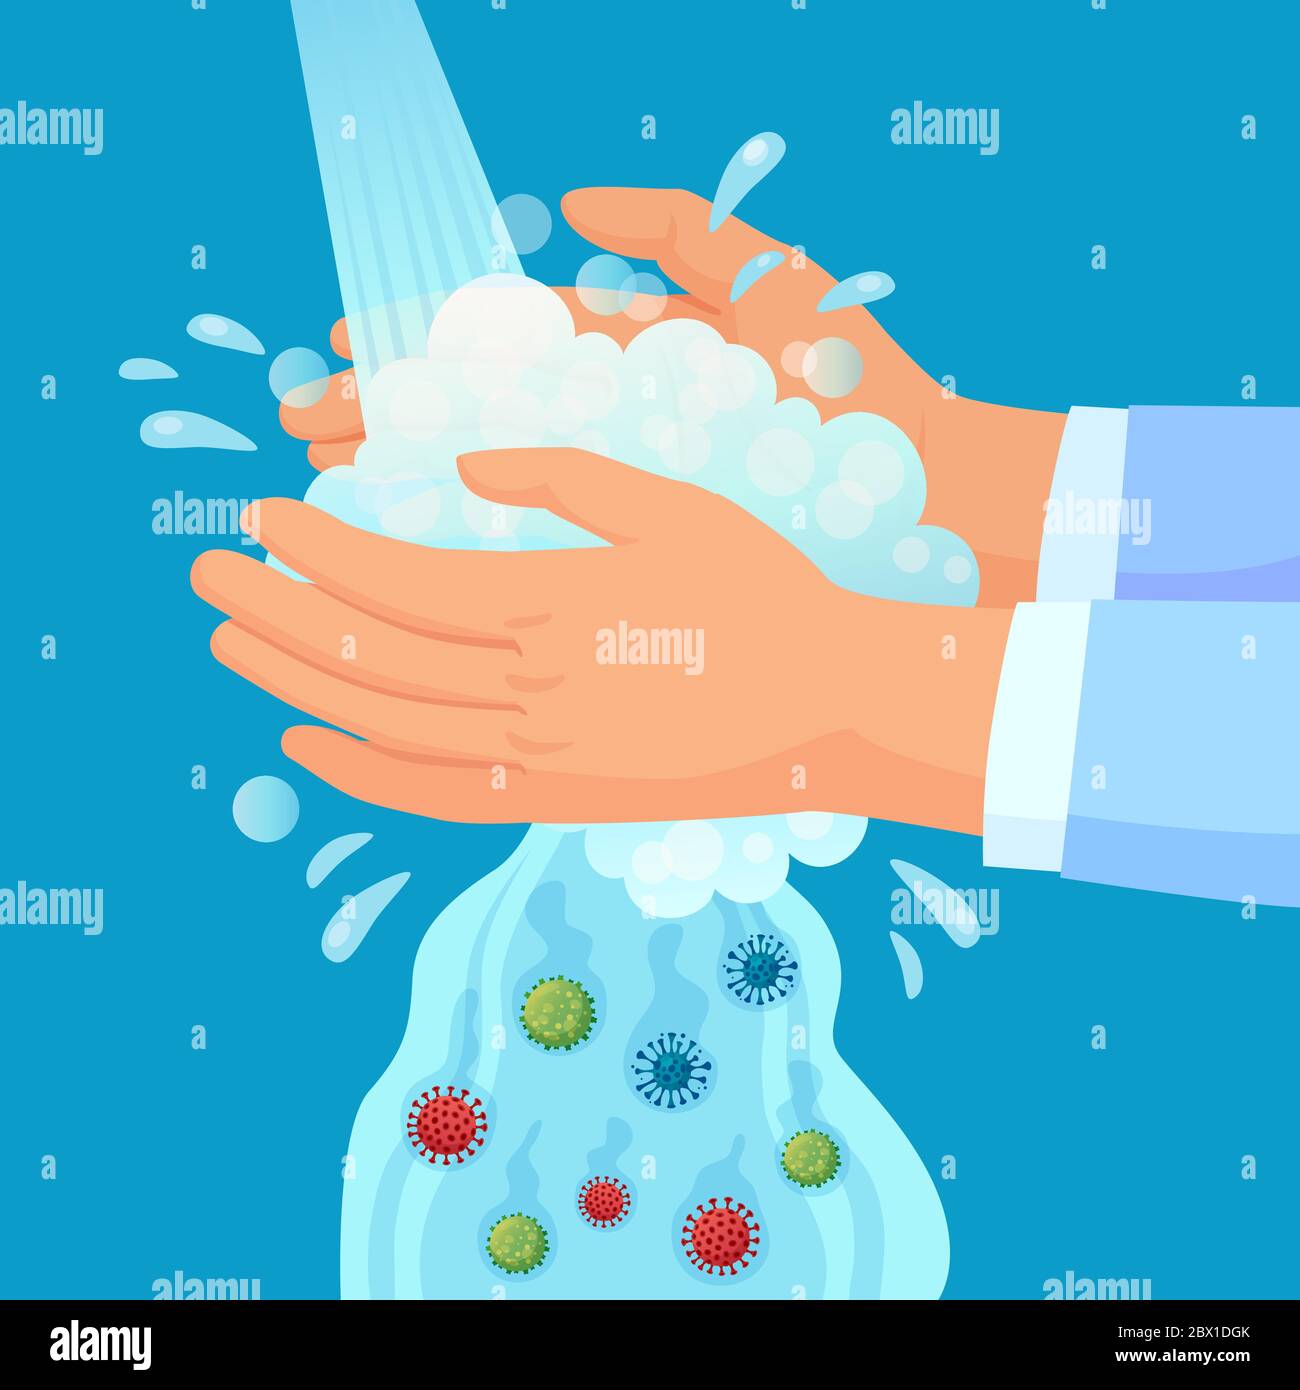 Lavage des mains. Propagande d'hygiène personnelle, se laver les mains avec du savon sous le robinet avec des germes tombant. Concept de vecteur de prévention du virus Covid Illustration de Vecteur